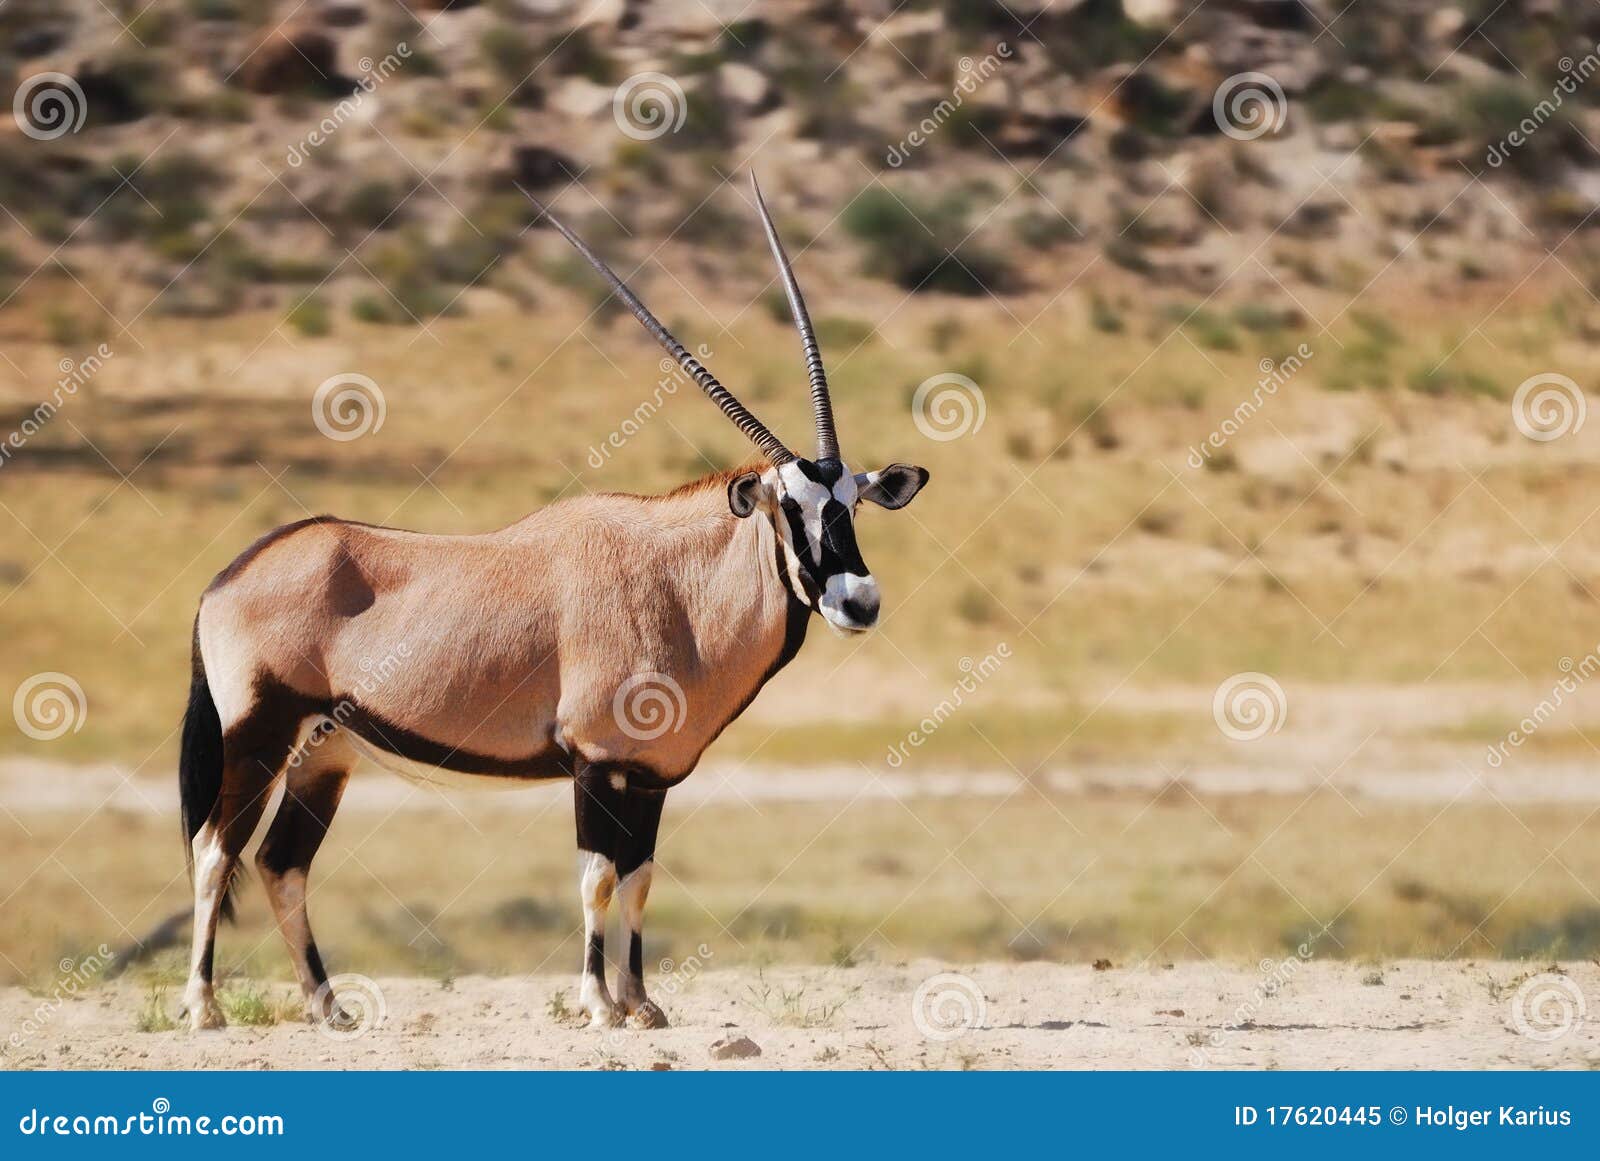 gemsbok (oryx gazella)